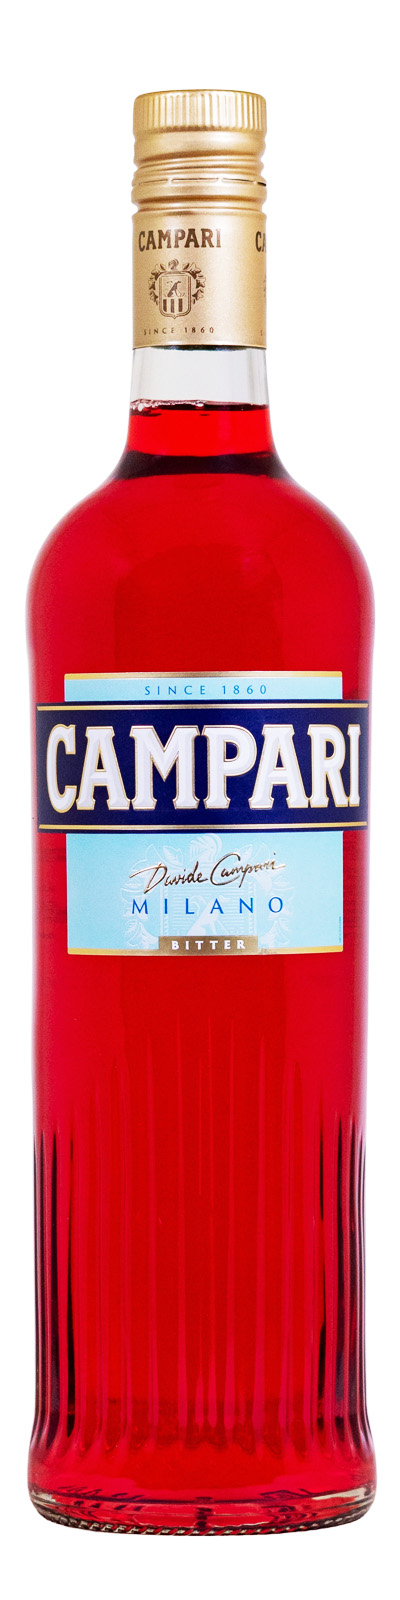 Campari Bitter - 1 Liter 25% vol